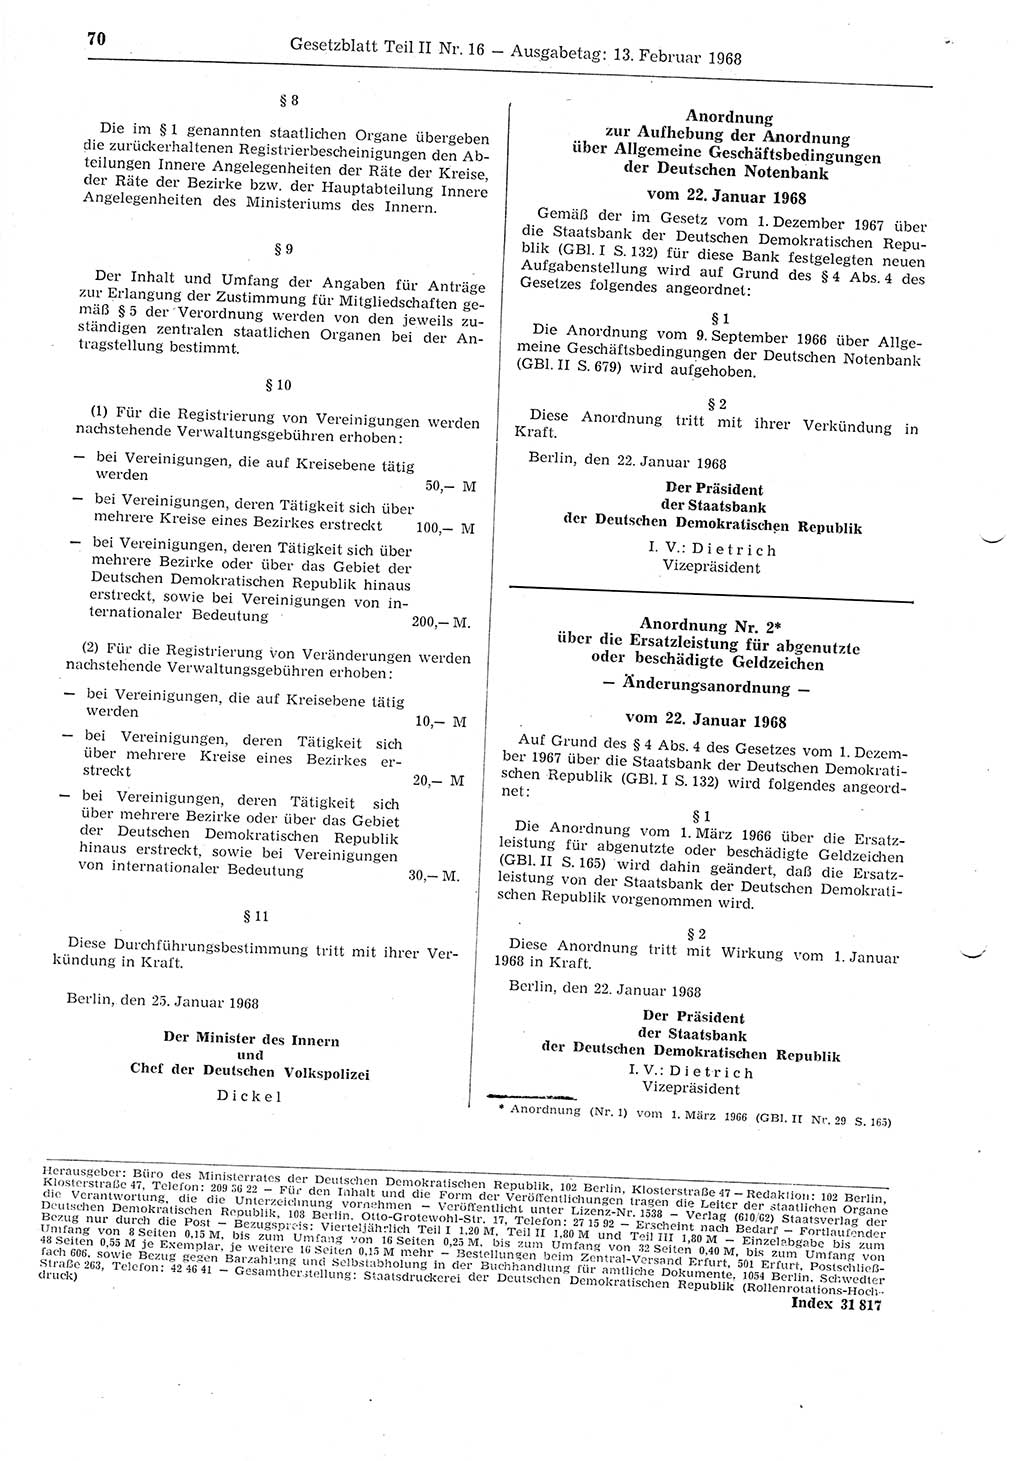 Gesetzblatt (GBl.) der Deutschen Demokratischen Republik (DDR) Teil ⅠⅠ 1968, Seite 70 (GBl. DDR ⅠⅠ 1968, S. 70)